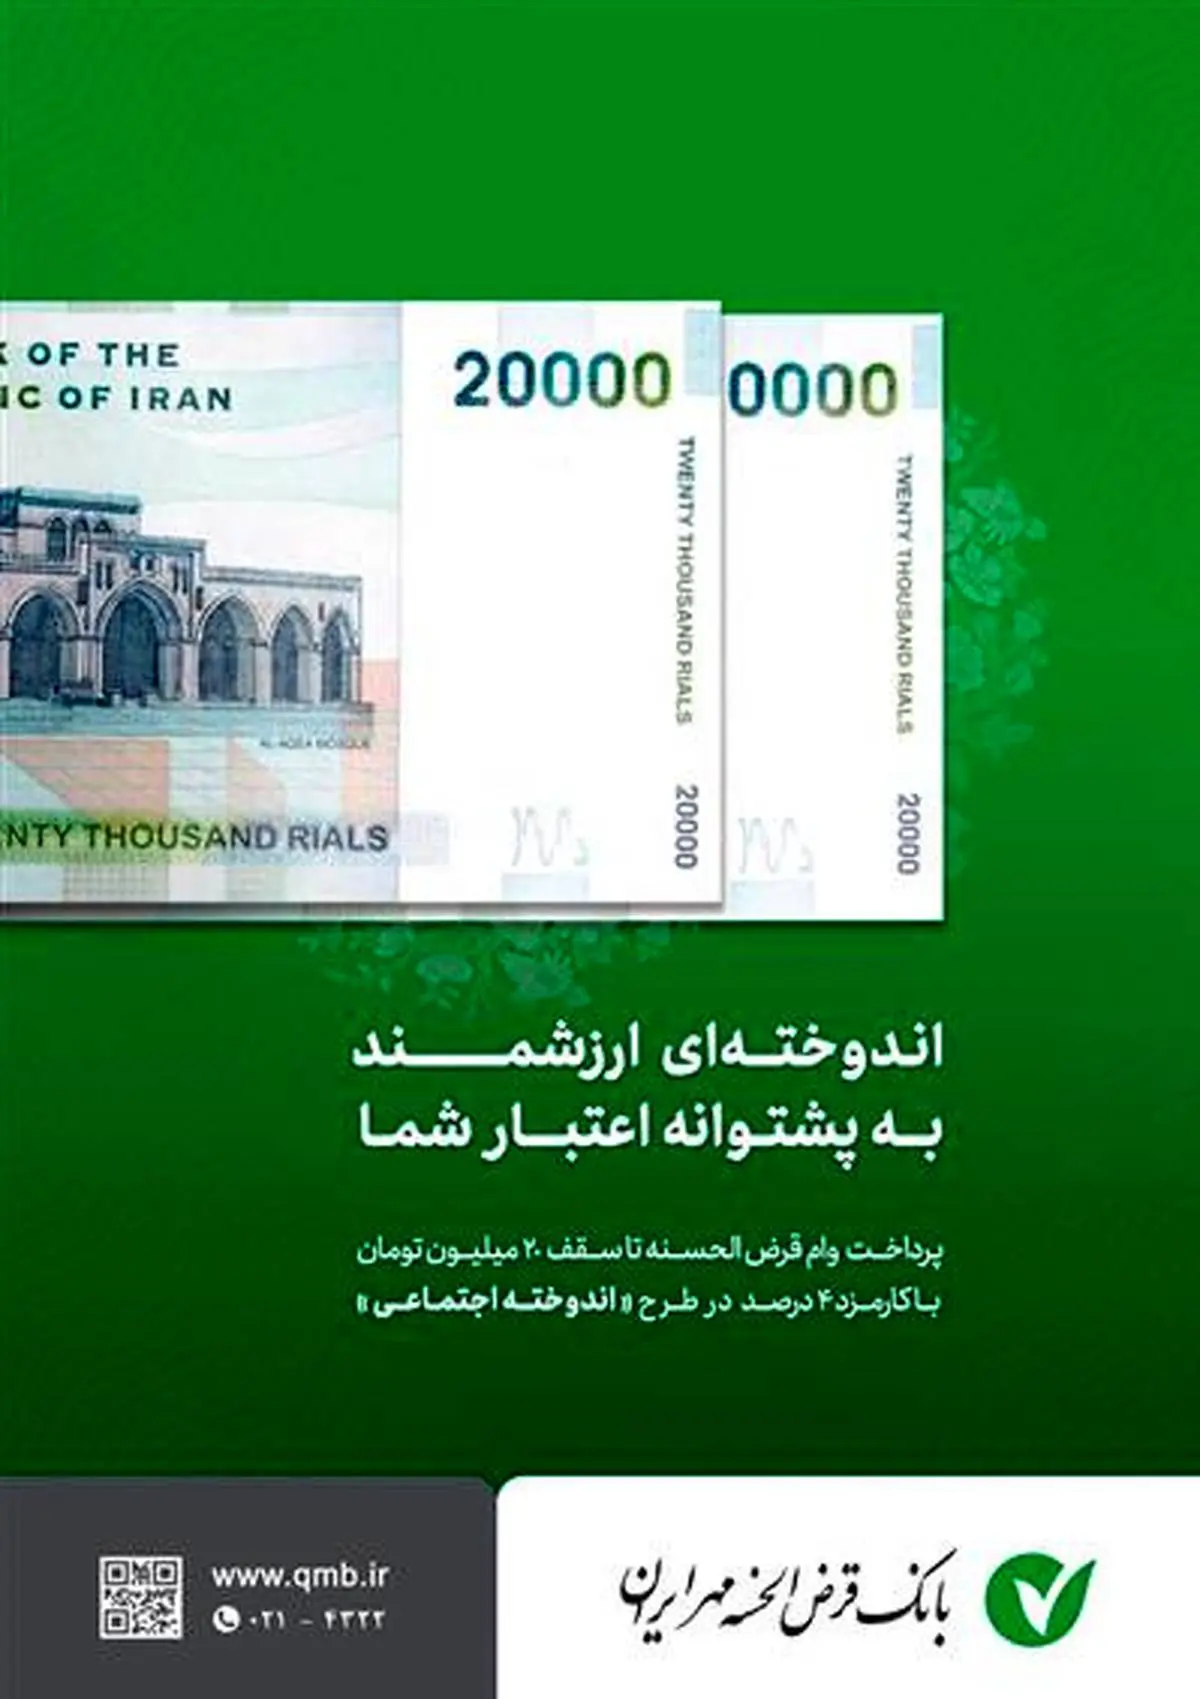 نحوه تبدیل پس انداز به وام در بانک مهر ایران
